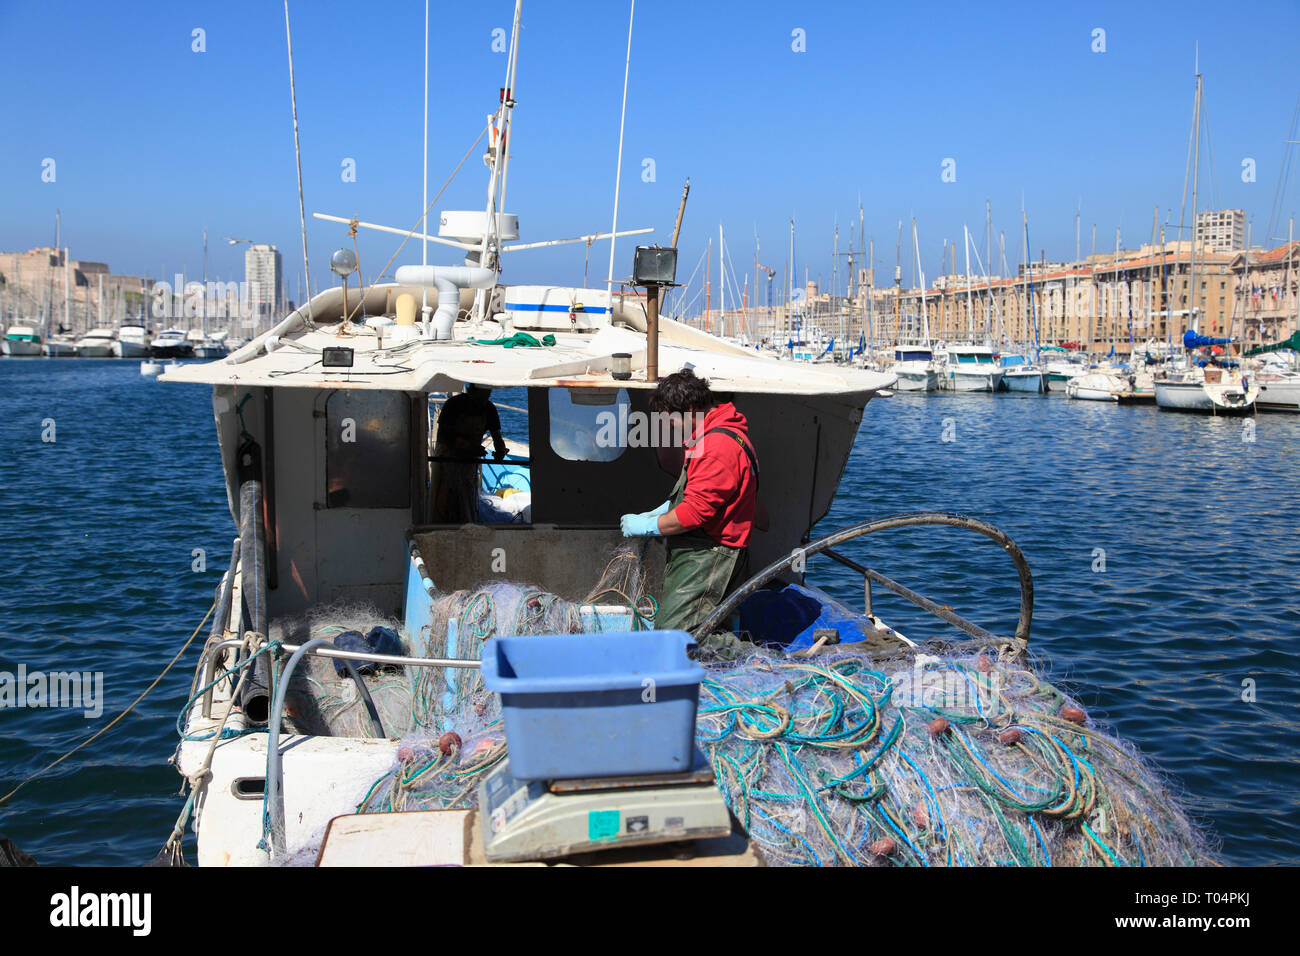 Bateau de pêche, Vieux Port, Vieux Port, Port, Marseille, Bouches du Rhone, Provence Alpes Cote d Azur, France, Europe Banque D'Images